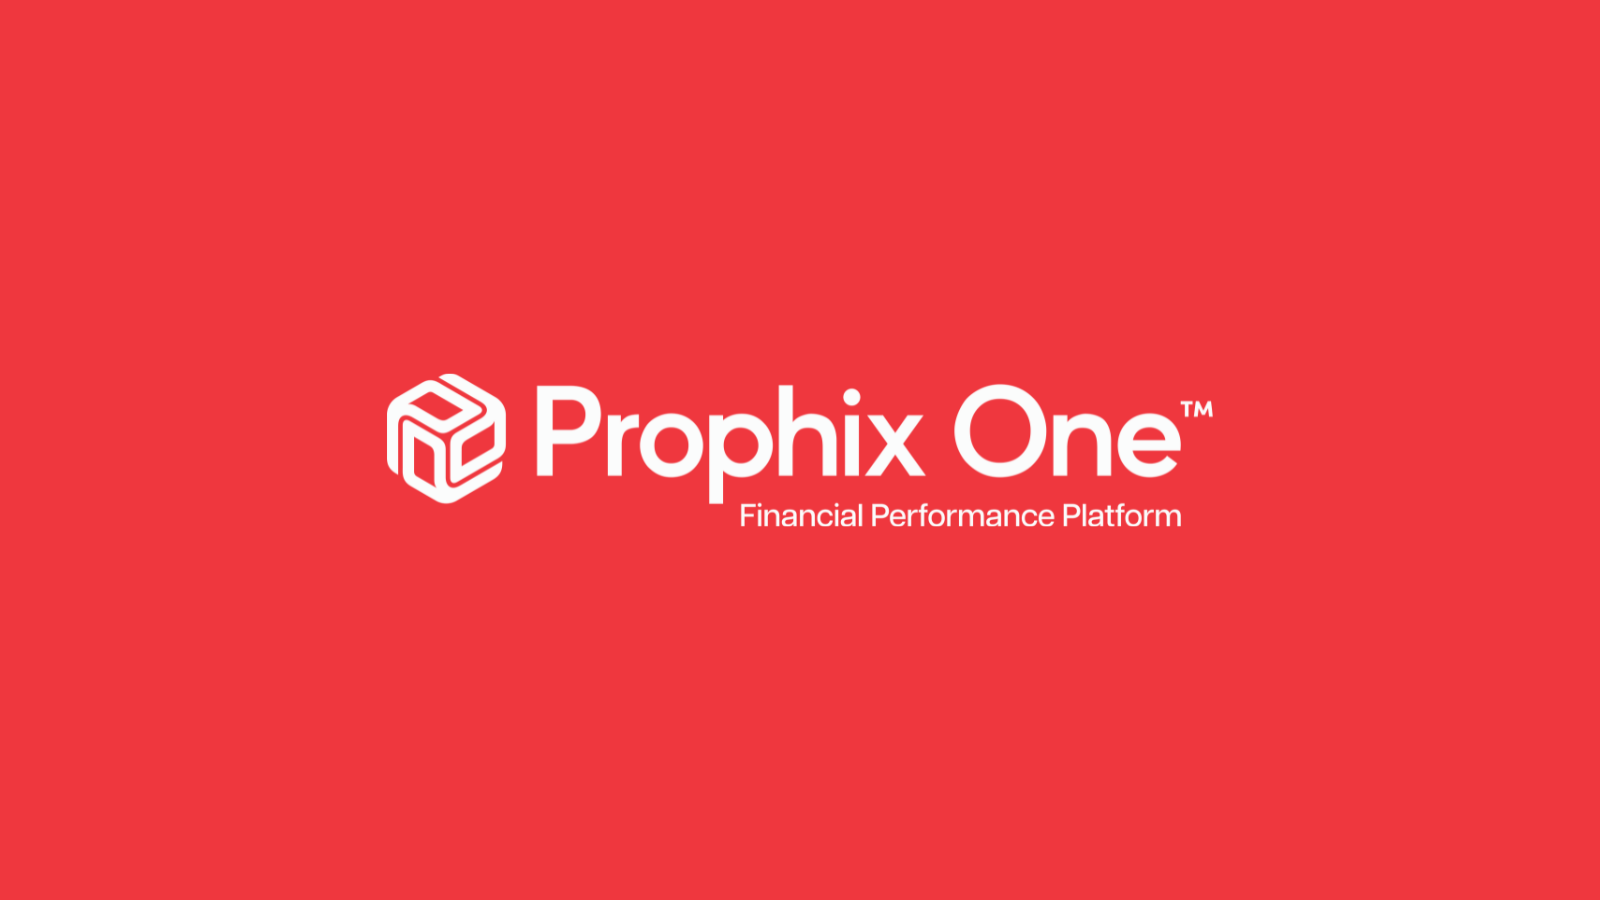 Prophix One